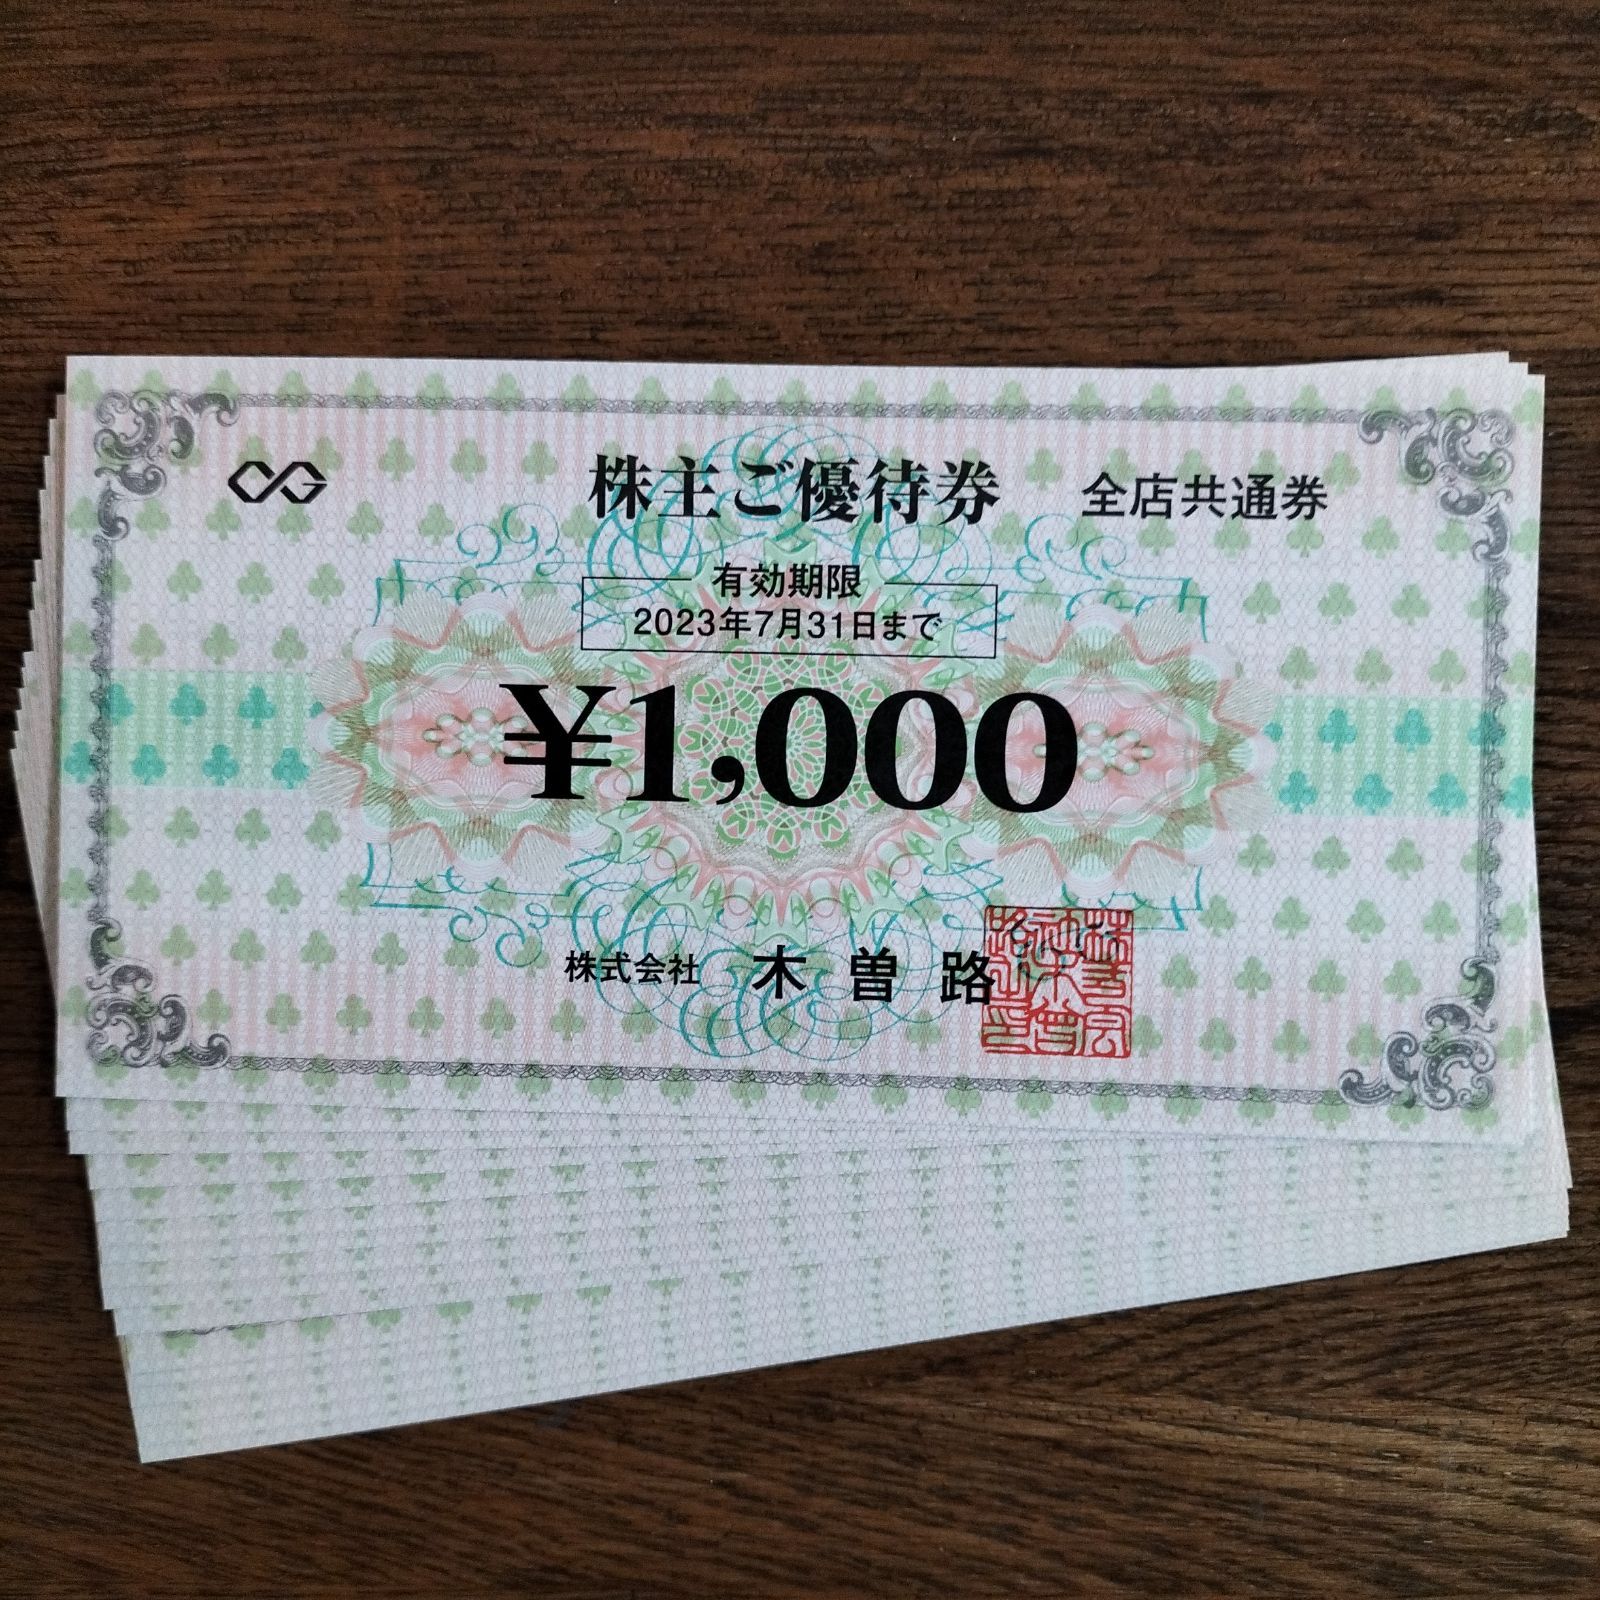 木曽路 株主優待券 16,000円分 - メルカリ